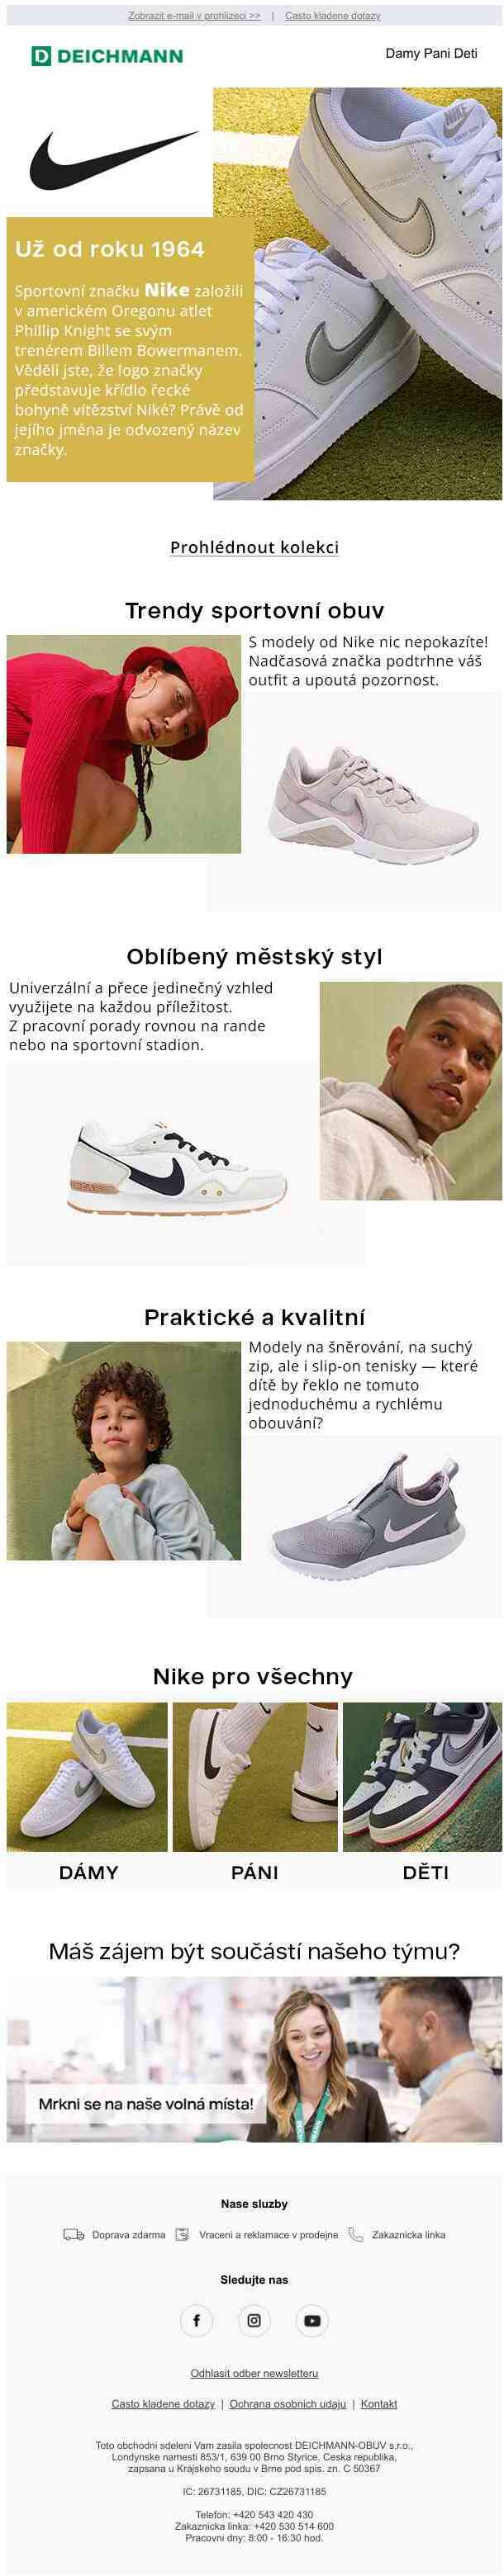 Značka Nike — víc než jen sportovní obuv!